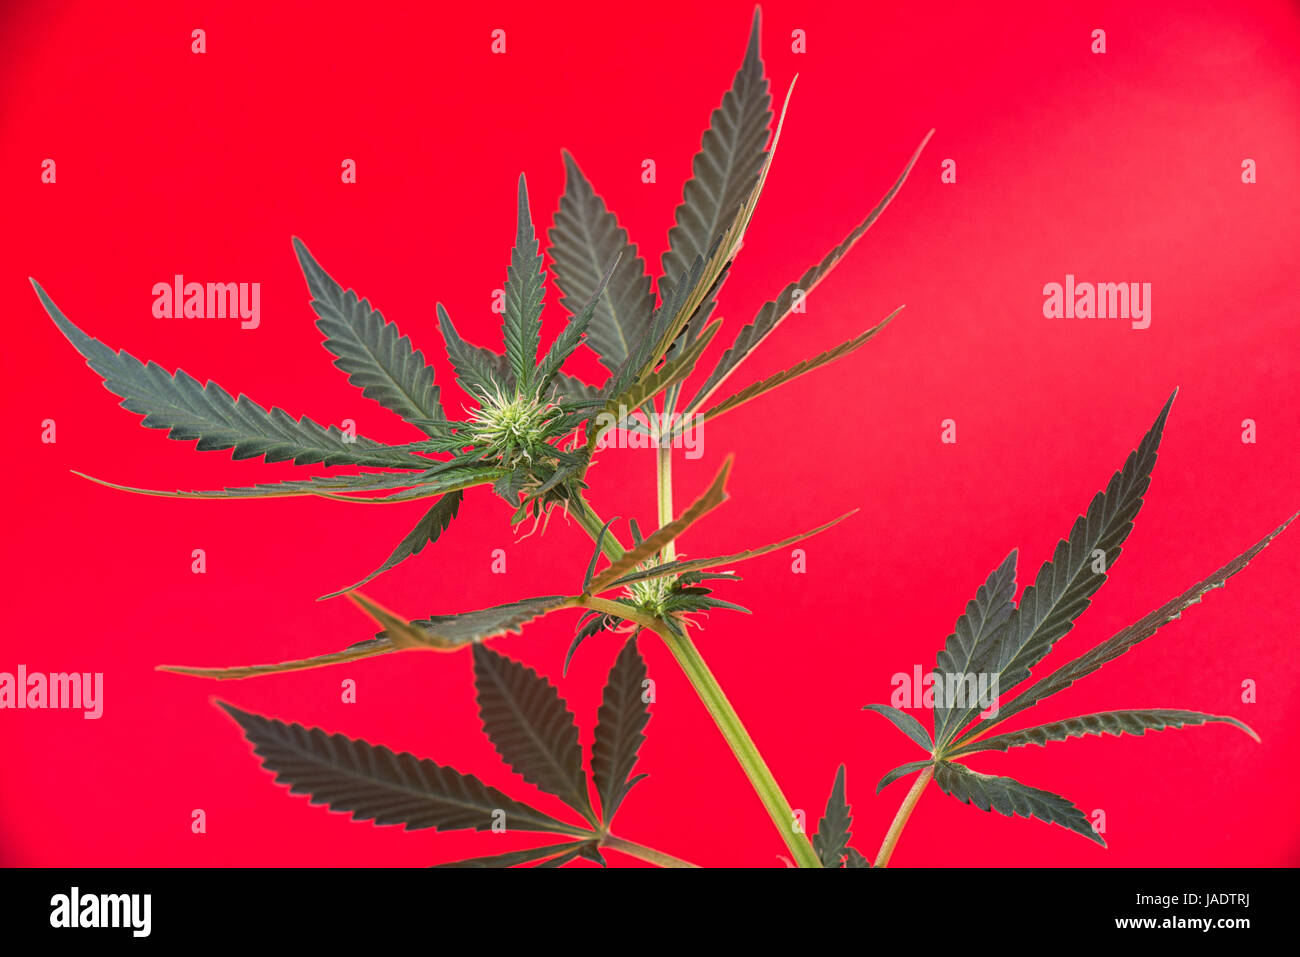 Dettaglio della cannabis cola con peli visibili e lascia su di inizio fase di fioritura - medical marijuana concept Foto Stock